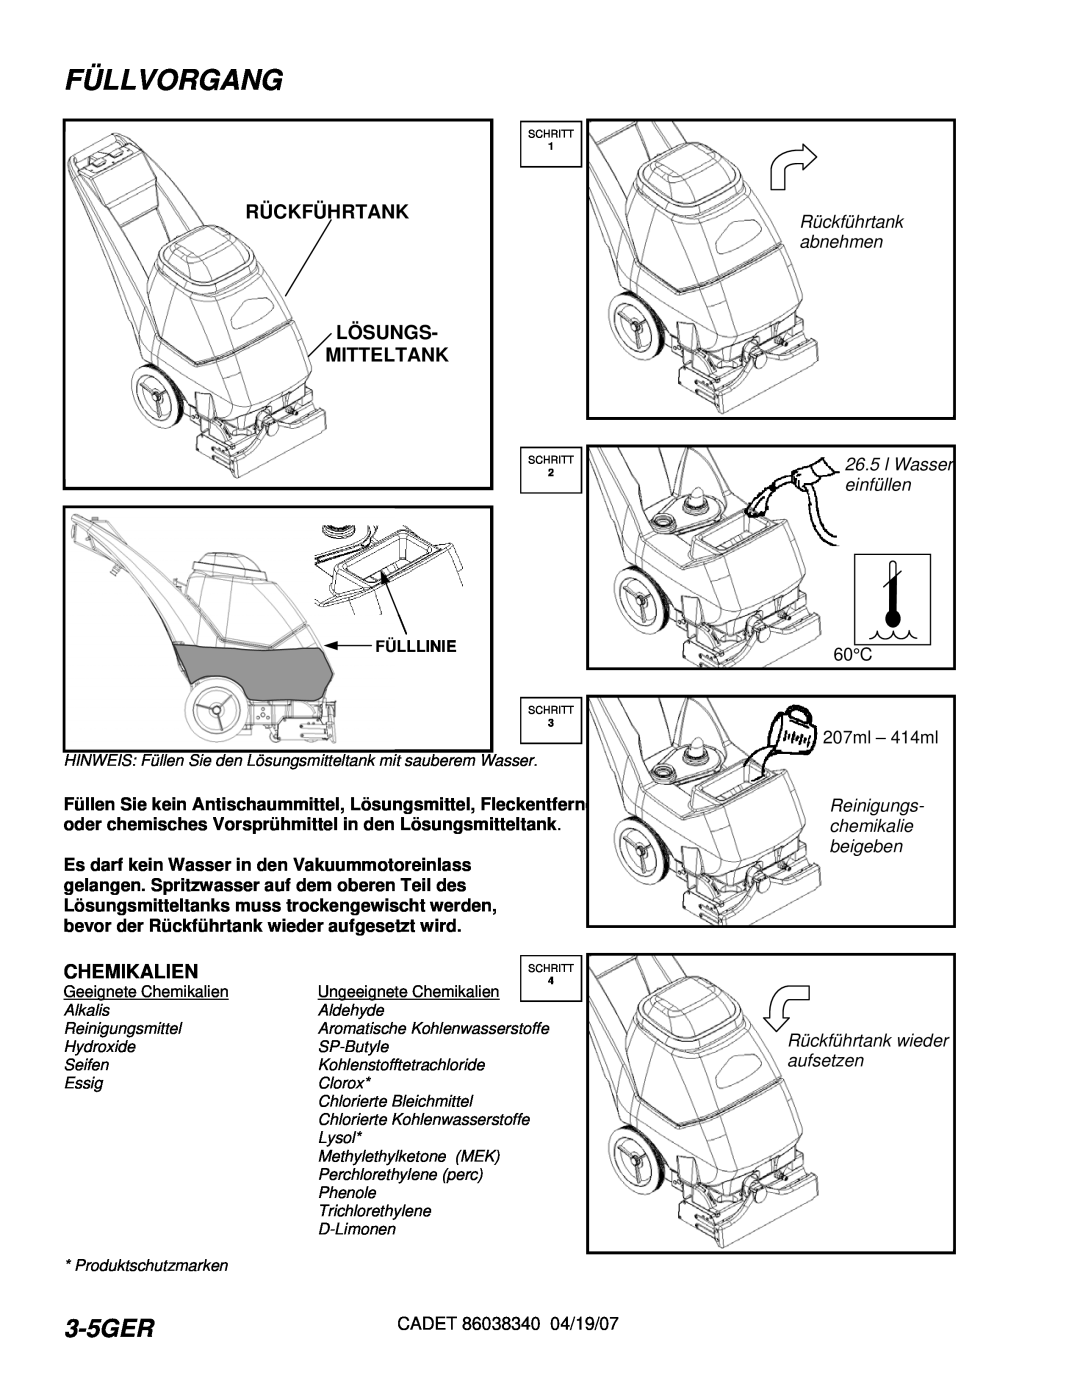 Windsor CDT7IE/10080070 manual Füllvorgang, 3-5GER, Rückführtank Lösungs Mitteltank, Filling The Cadet, Chemikalien 